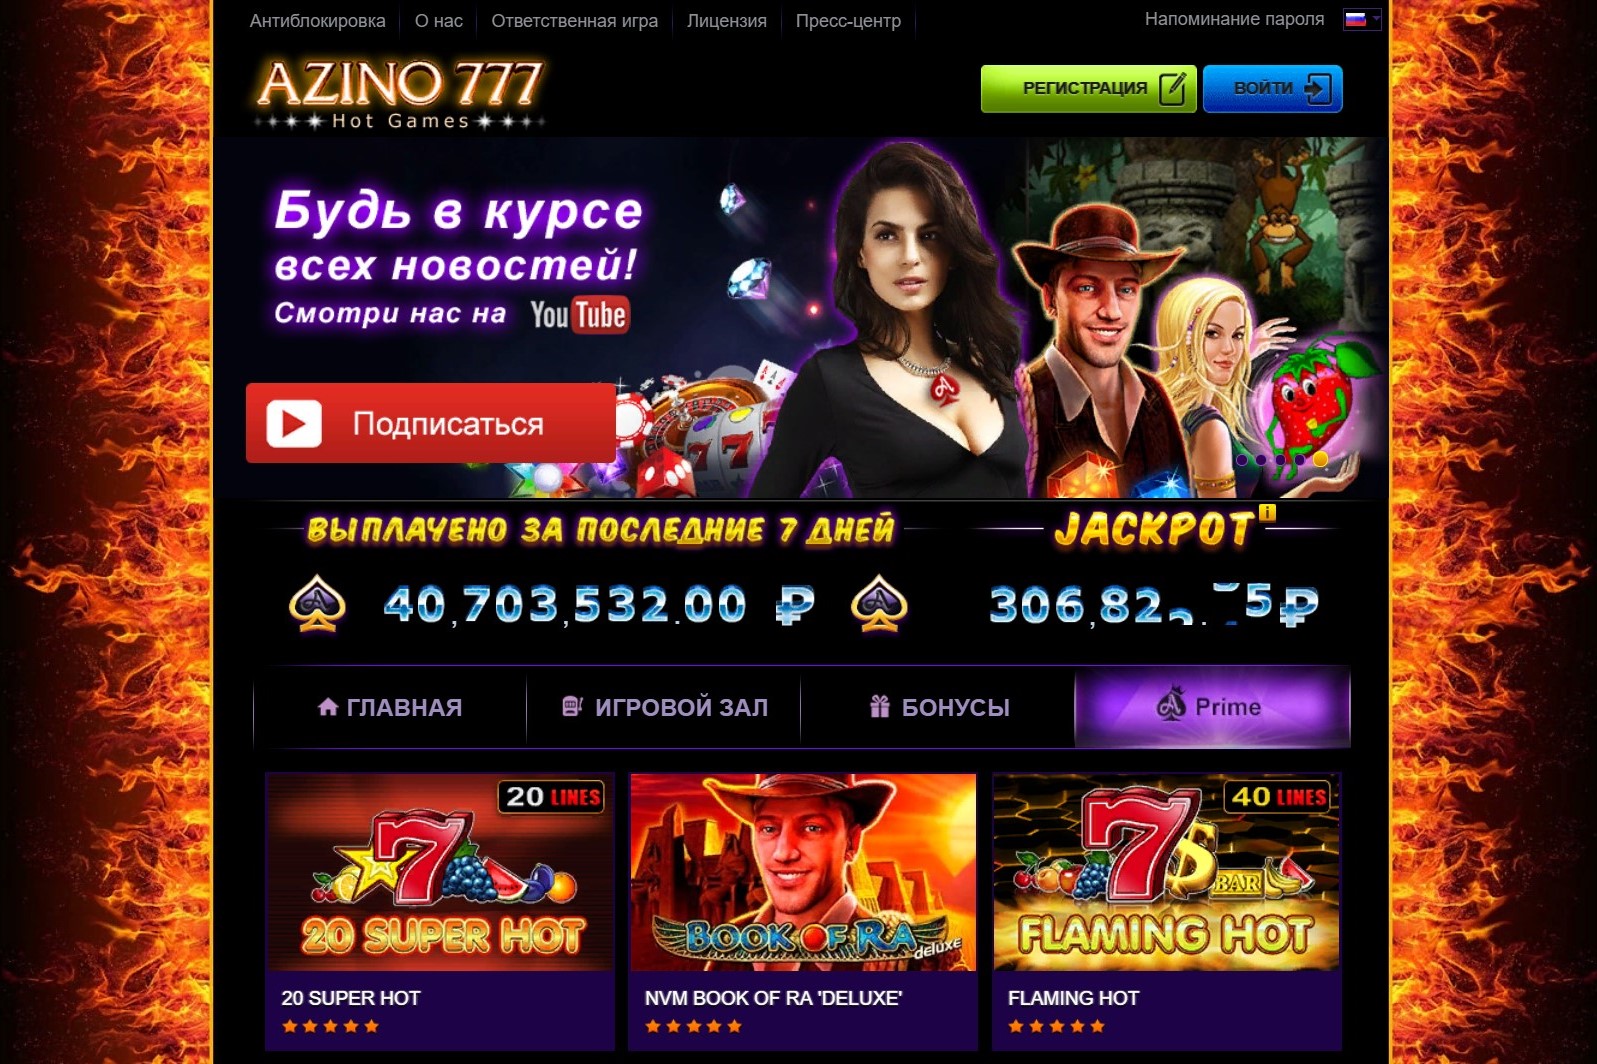 Онлайн казино азино777 отзывы стратегия мартингейла в ставках на спорт